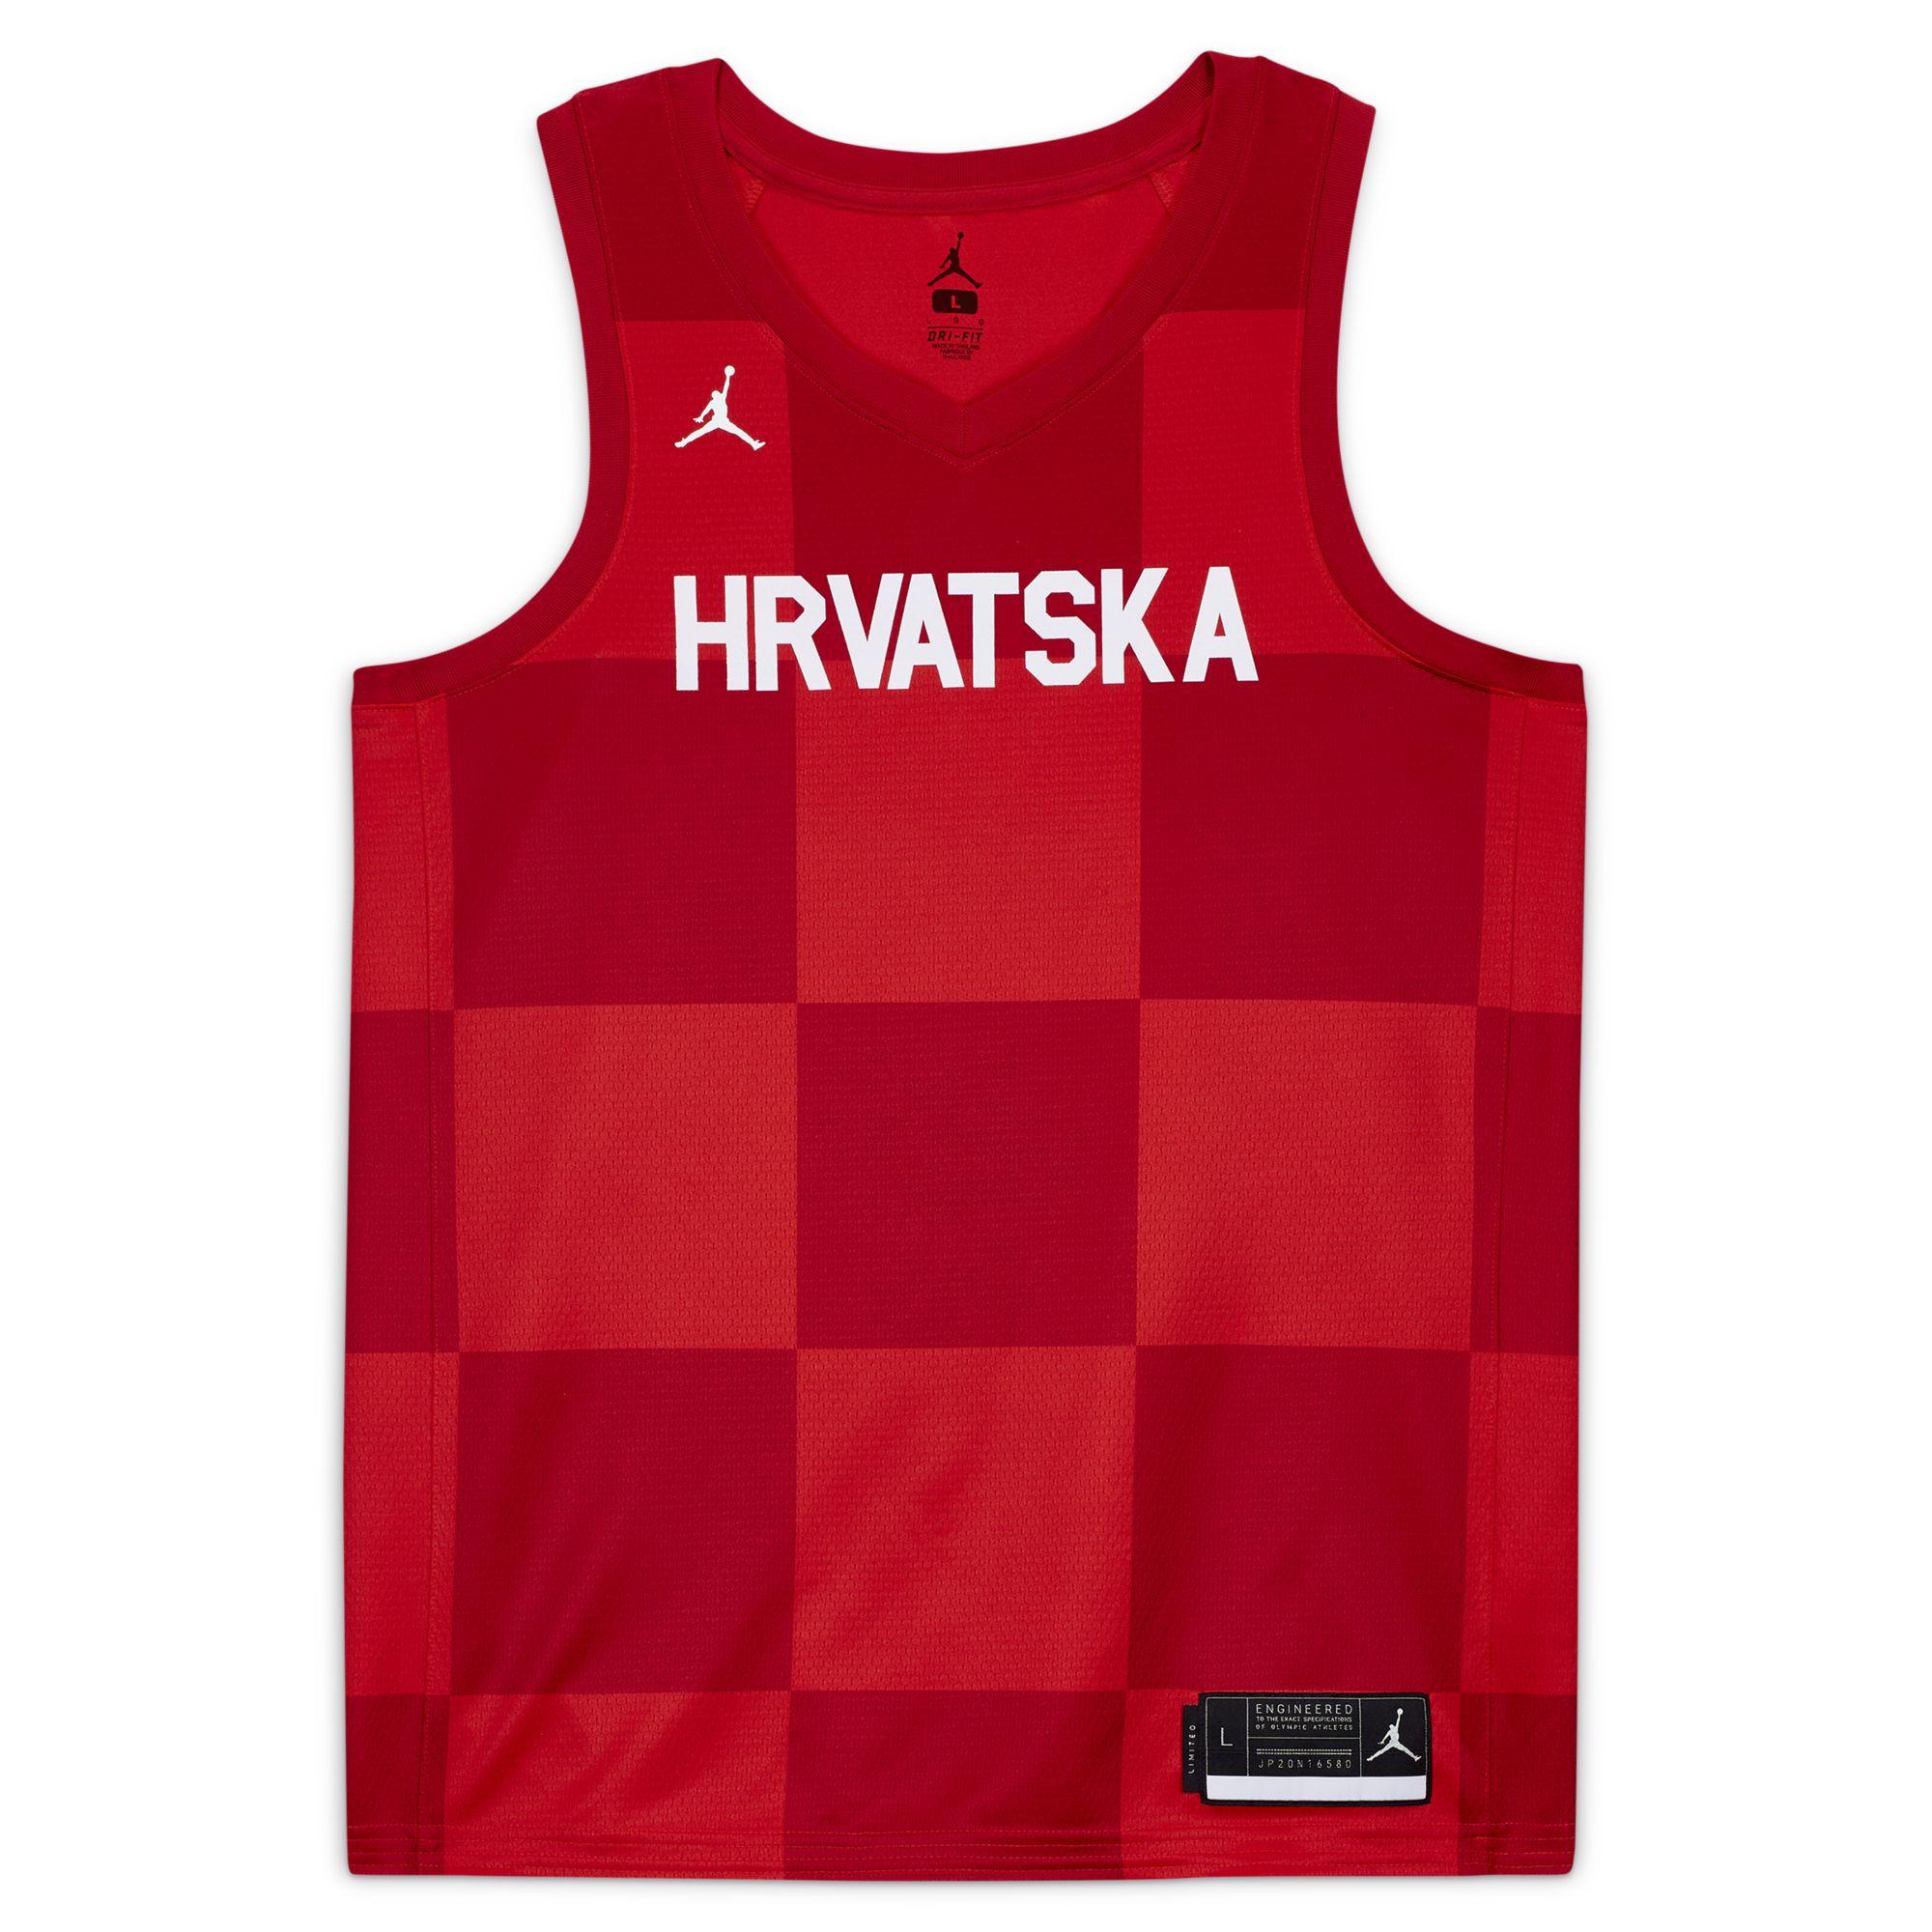 croatia jordan basketball jersey